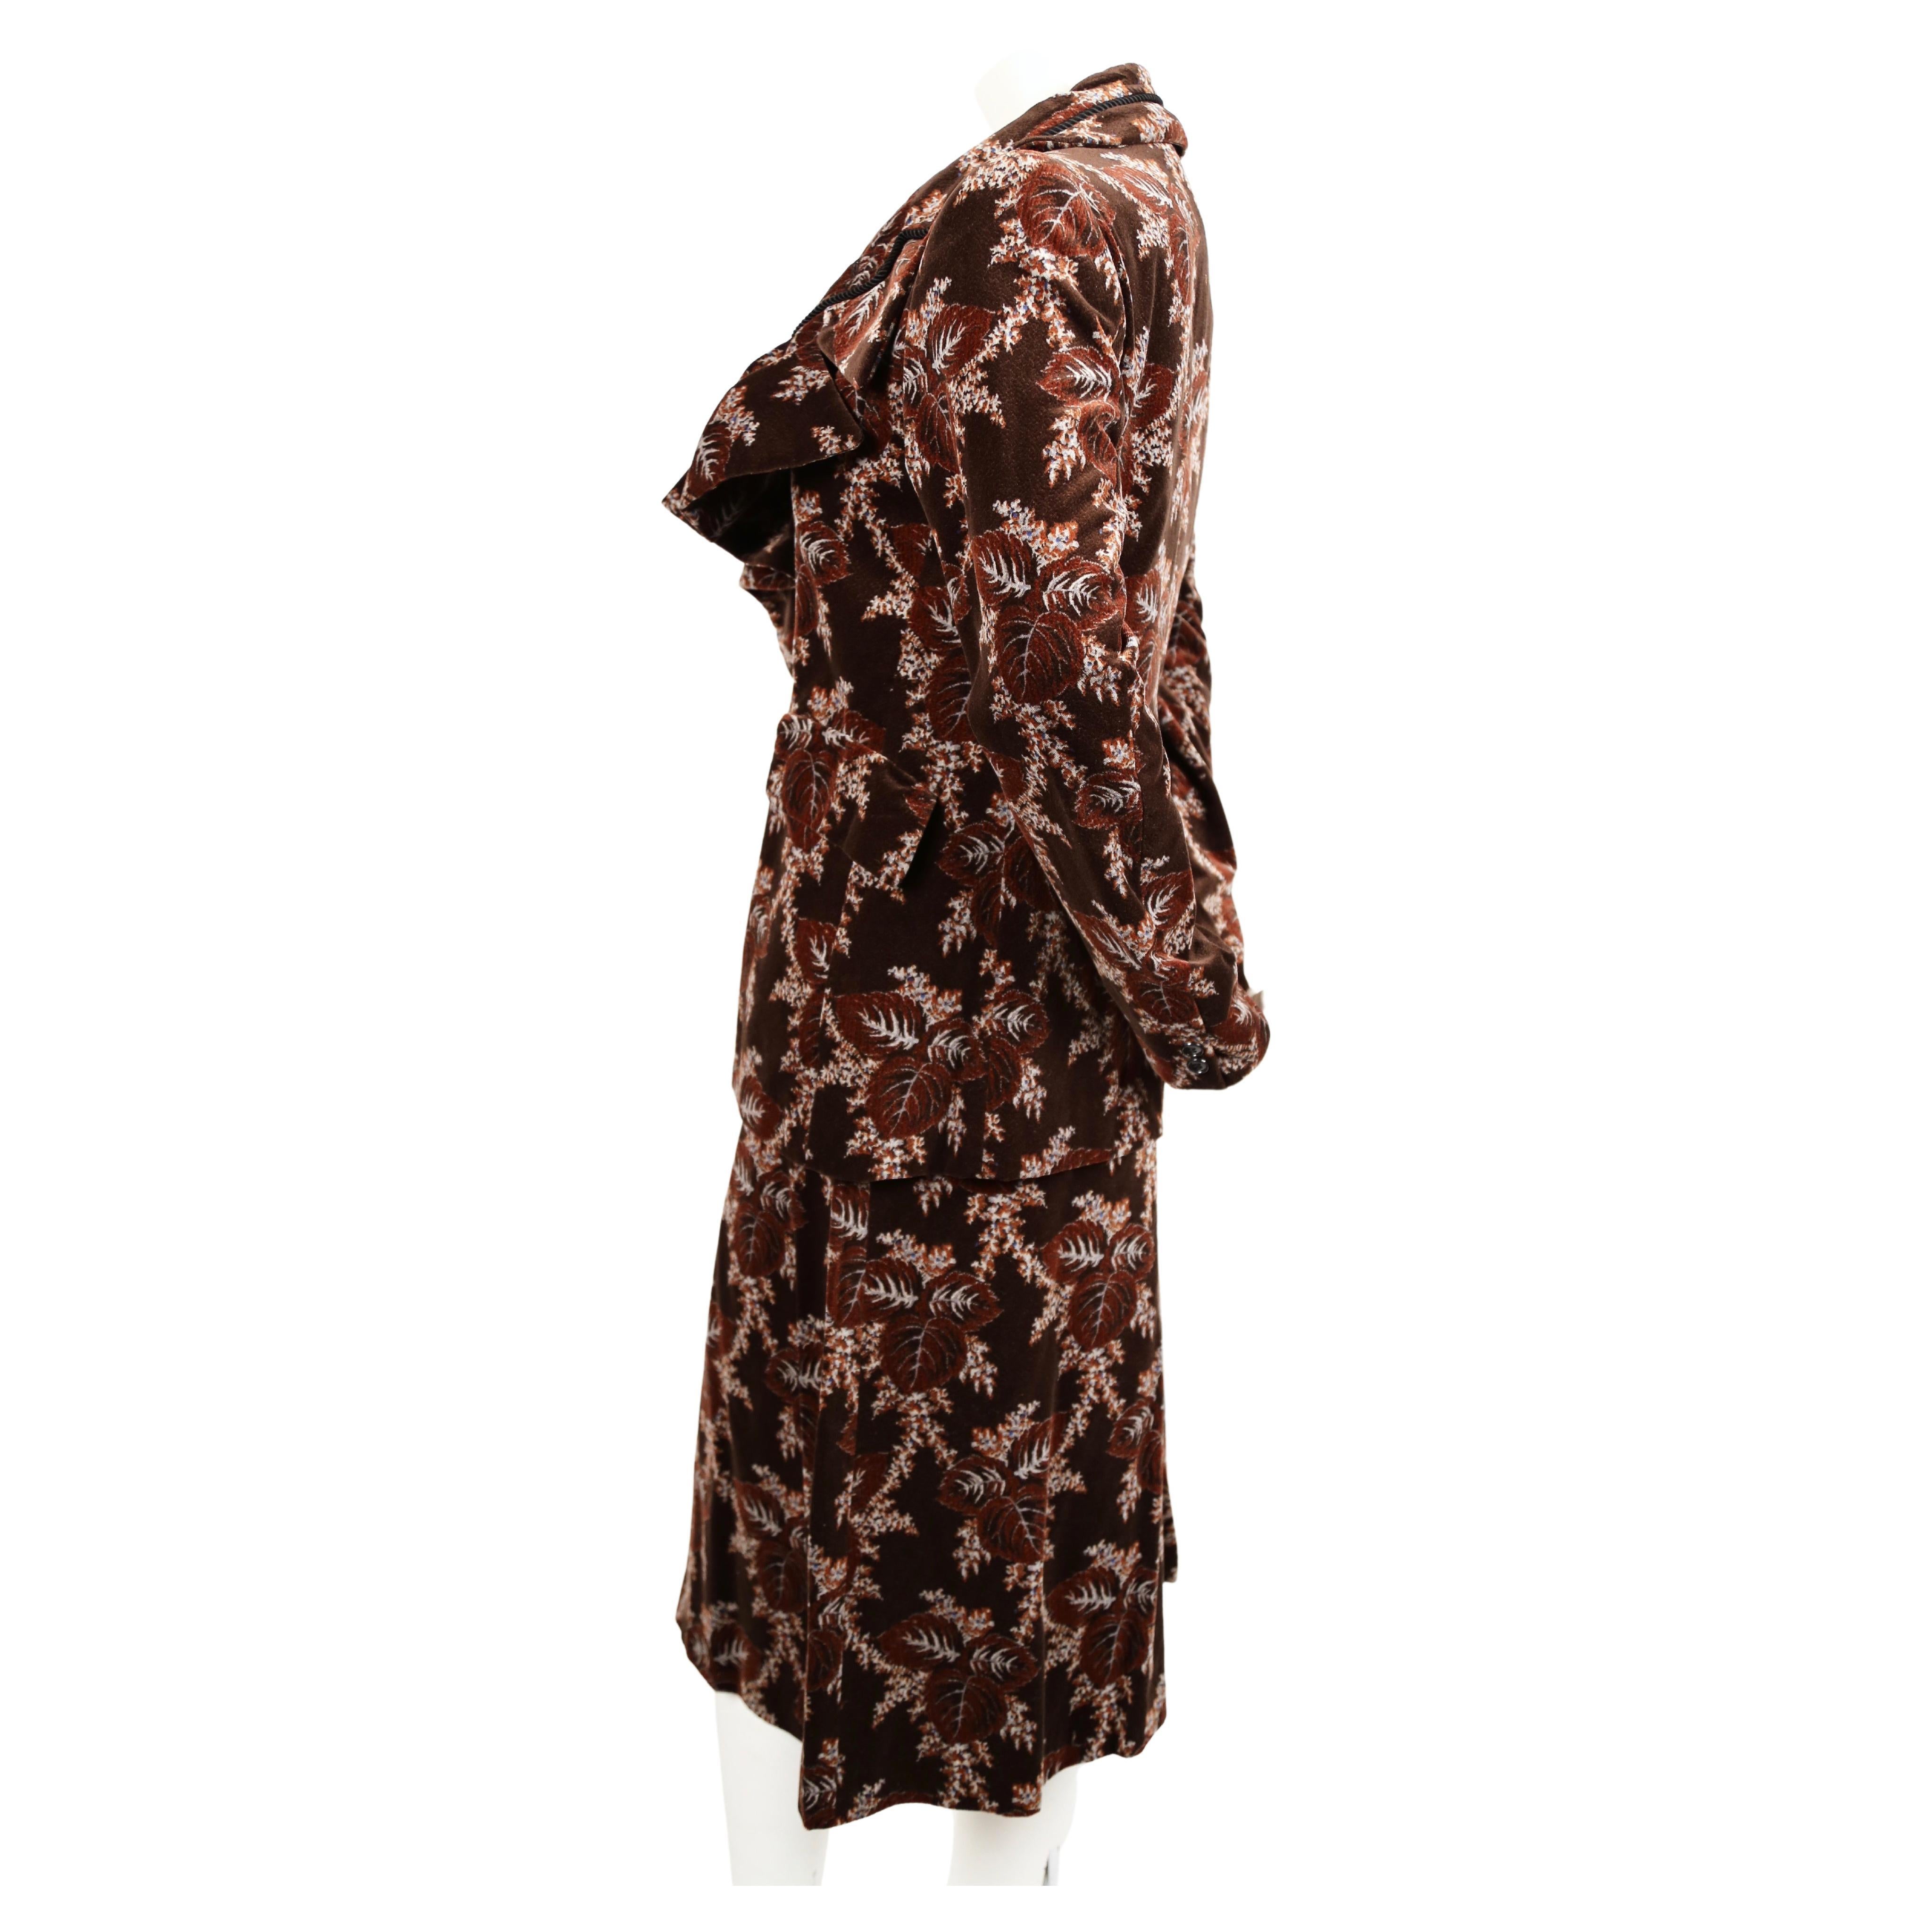 Magnifique veste en velours à fleurs avec encolure à volants et jupe de style corset de Comme Des Garcons datant de l'automne 2001. Elle est parfaite portée ensemble ou séparée. Veste de taille 'S' et mesure approximativement : 16